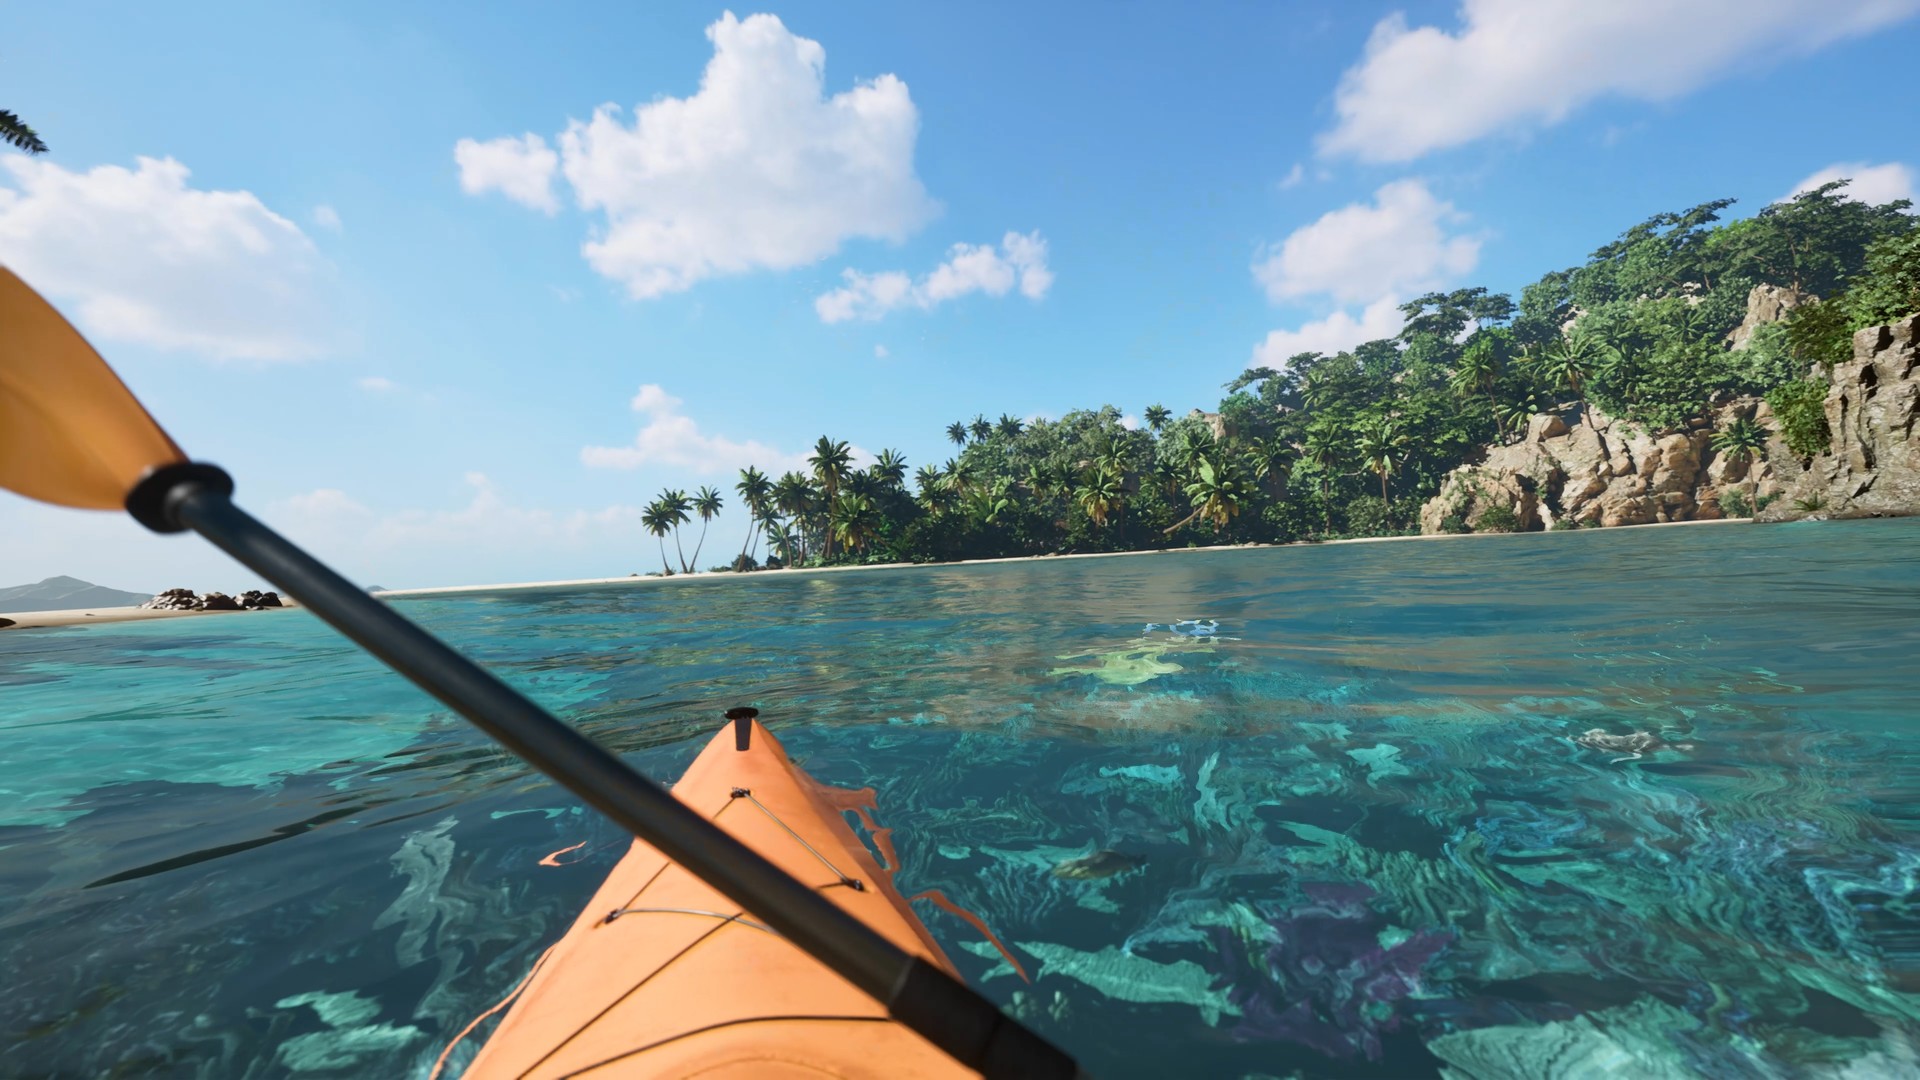 Kayak VR: Mirage Steam Altergift [USD 18.76]